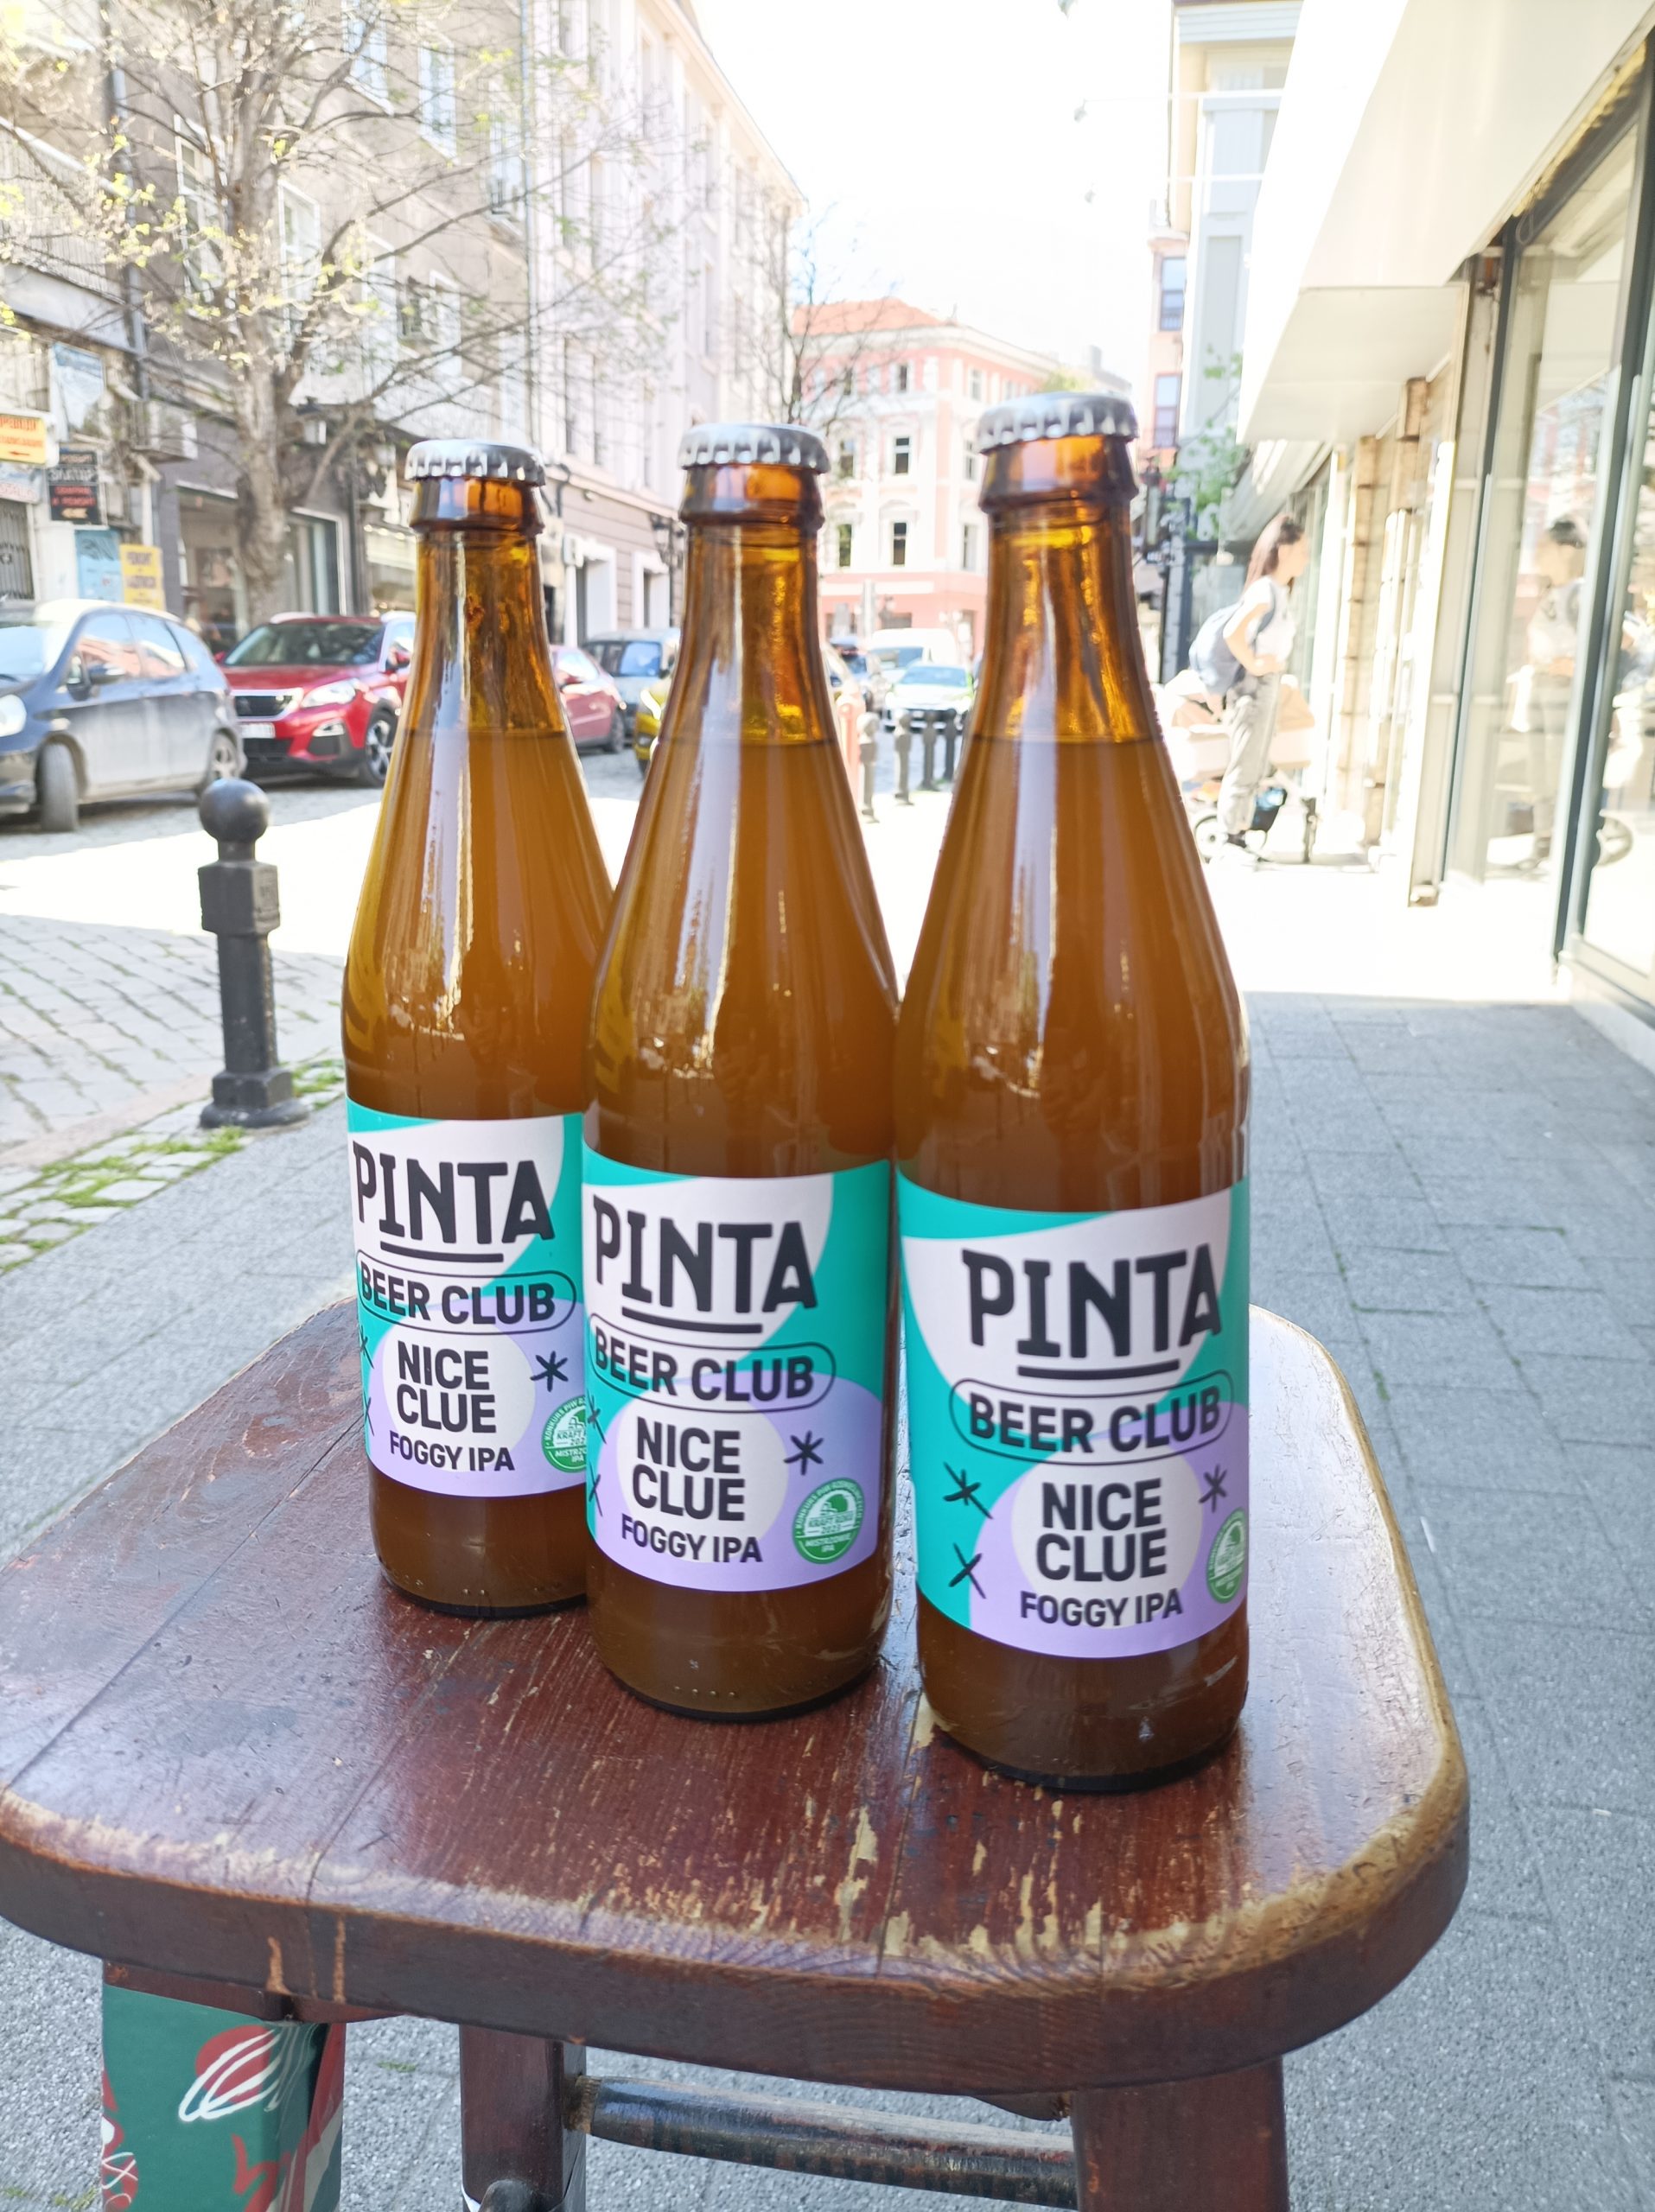 PINTA Beer Club: Nice Clue